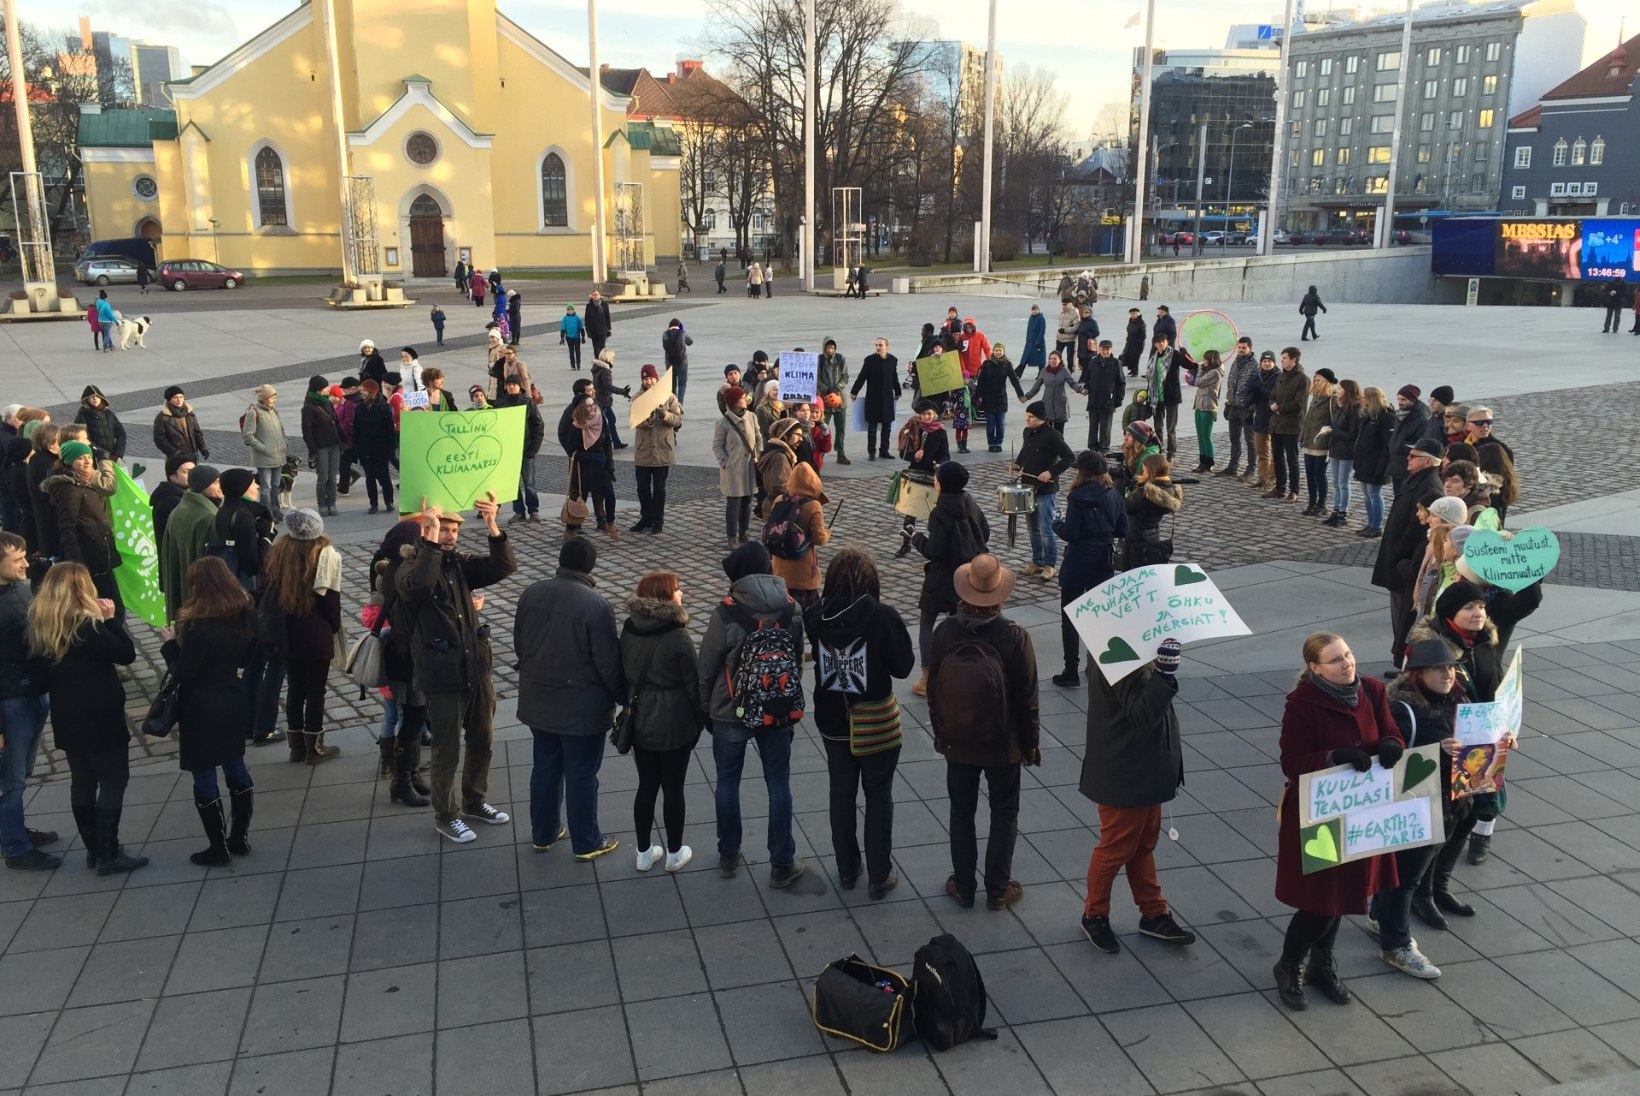 ÕHTULEHE VIDEO JA GALERII | Meil ei ole planeet B-d ehk Tallinnas peeti kliimamarssi